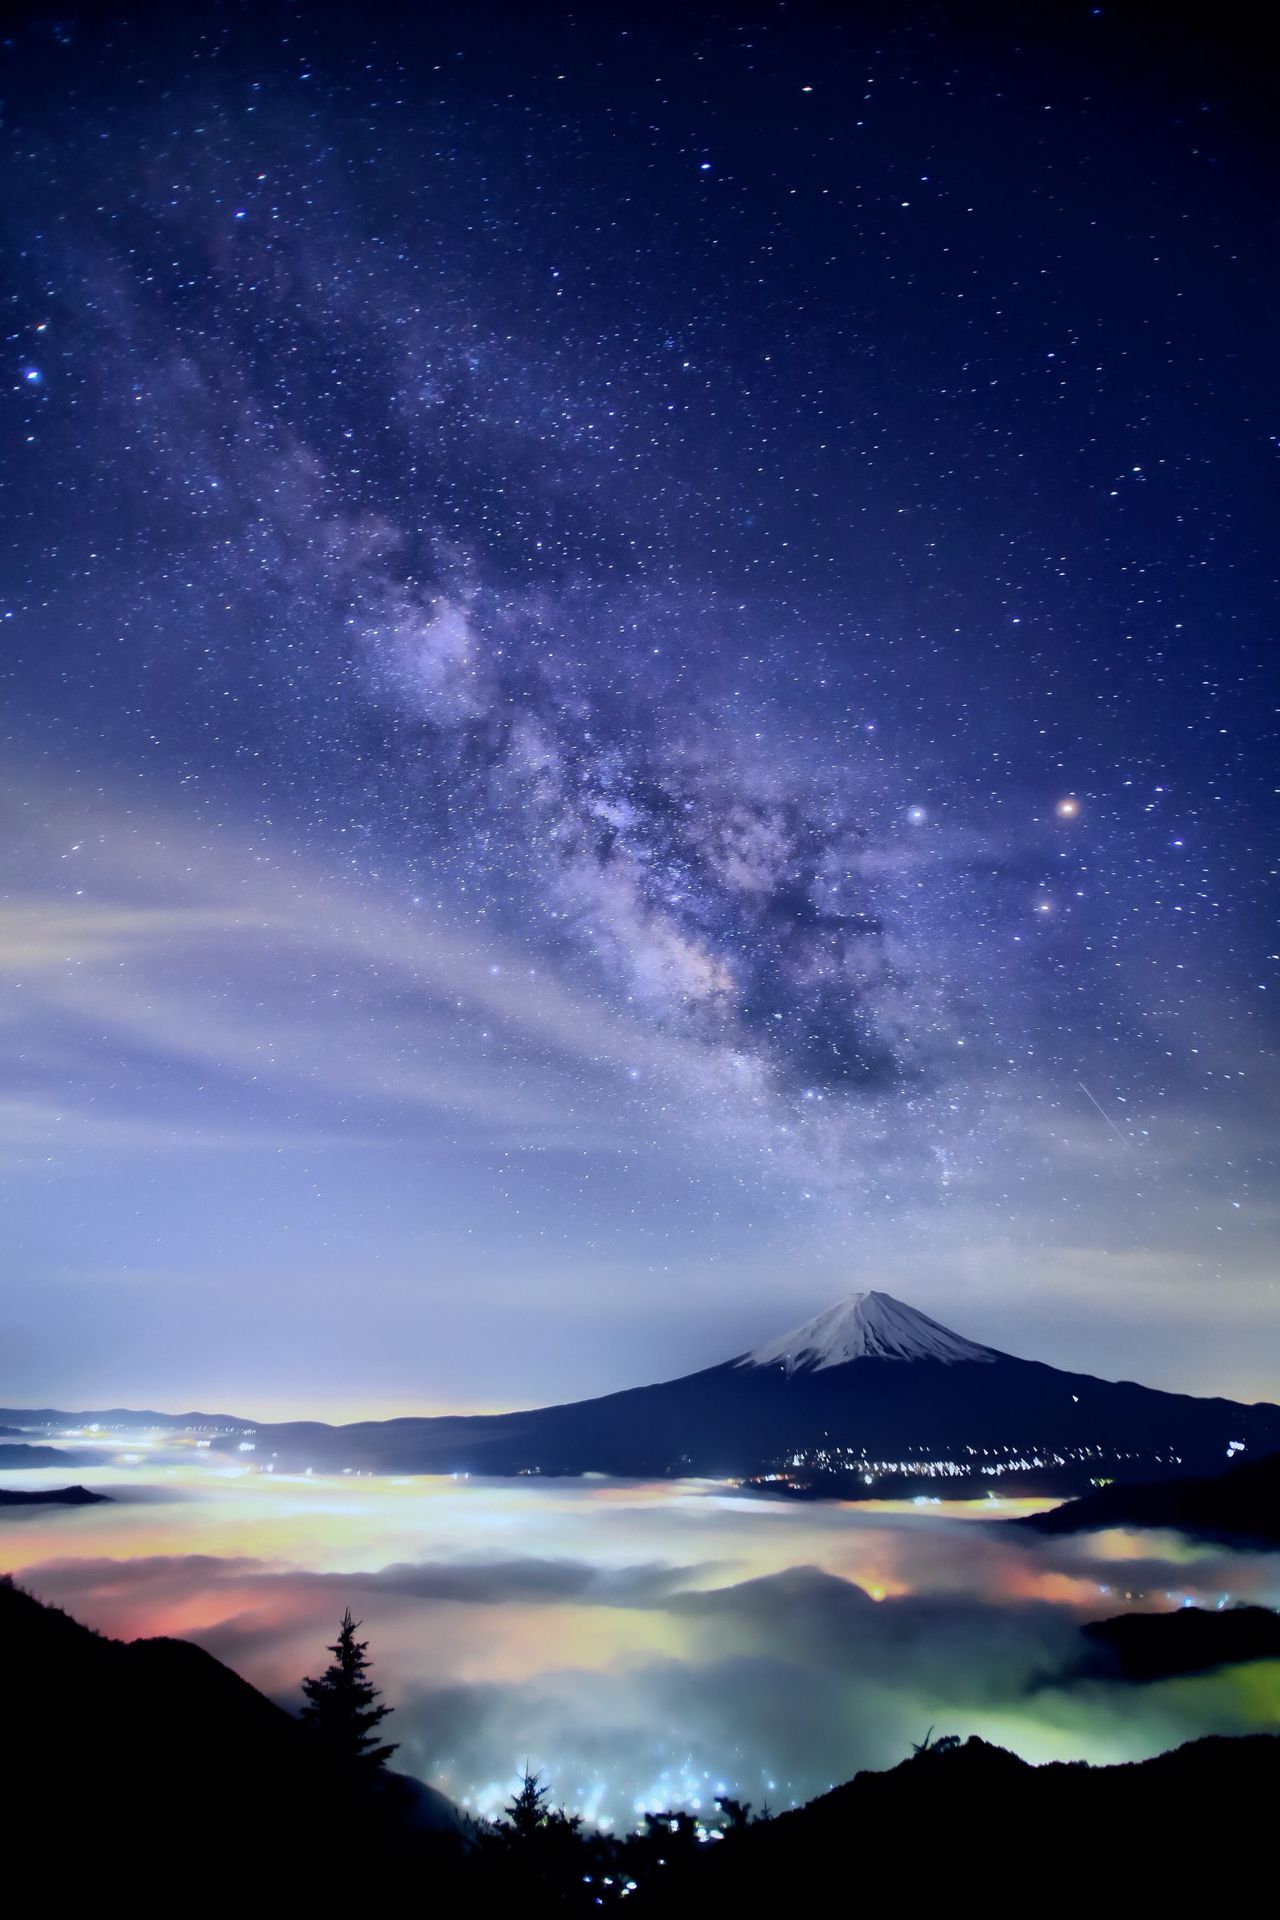 Hashimuki est également connu pour ses magnifiques photos de nuit. Ici, le mont Fuji, la Voie lactée et une mer de nuages éclairée par les lumières urbaines créent une harmonie époustouflante.